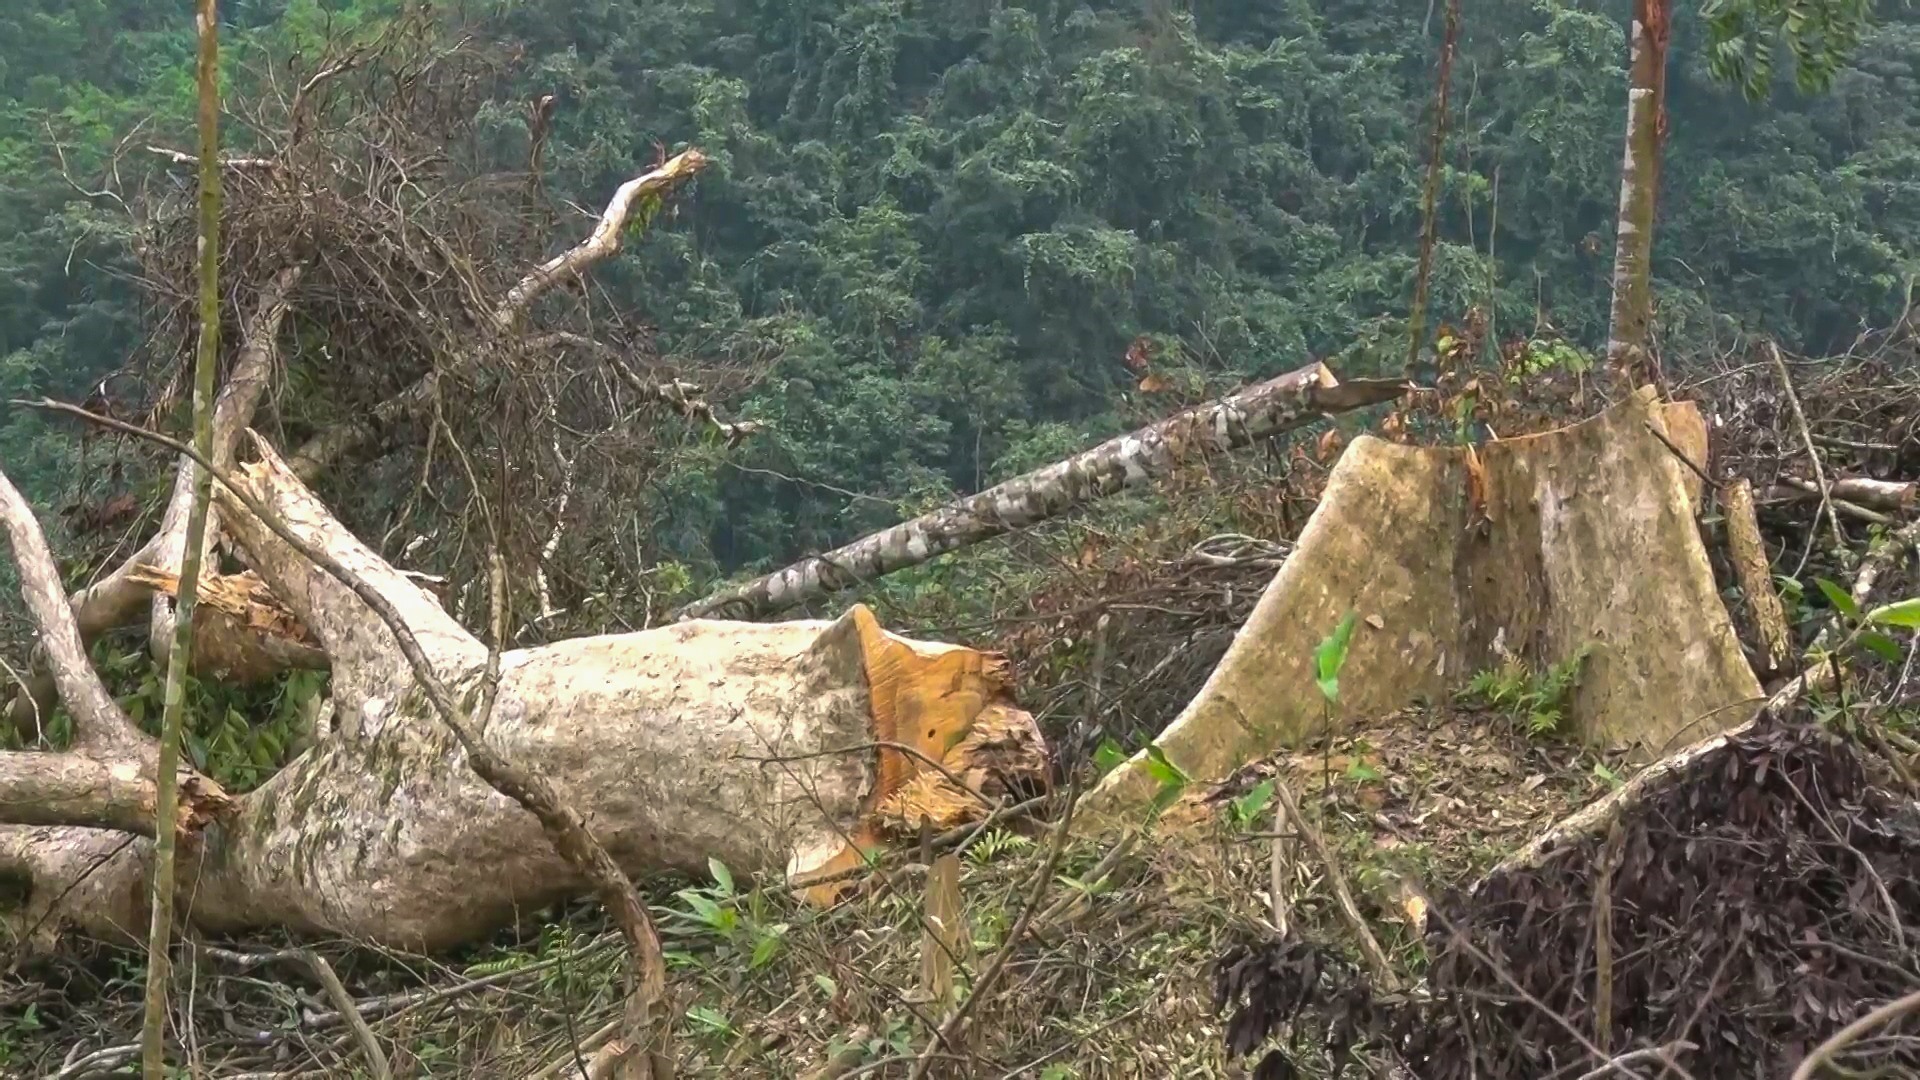 Khung cảnh hoang tàn tại khu vực rừng bị chặt phá. Ảnh: Cộng tác viên